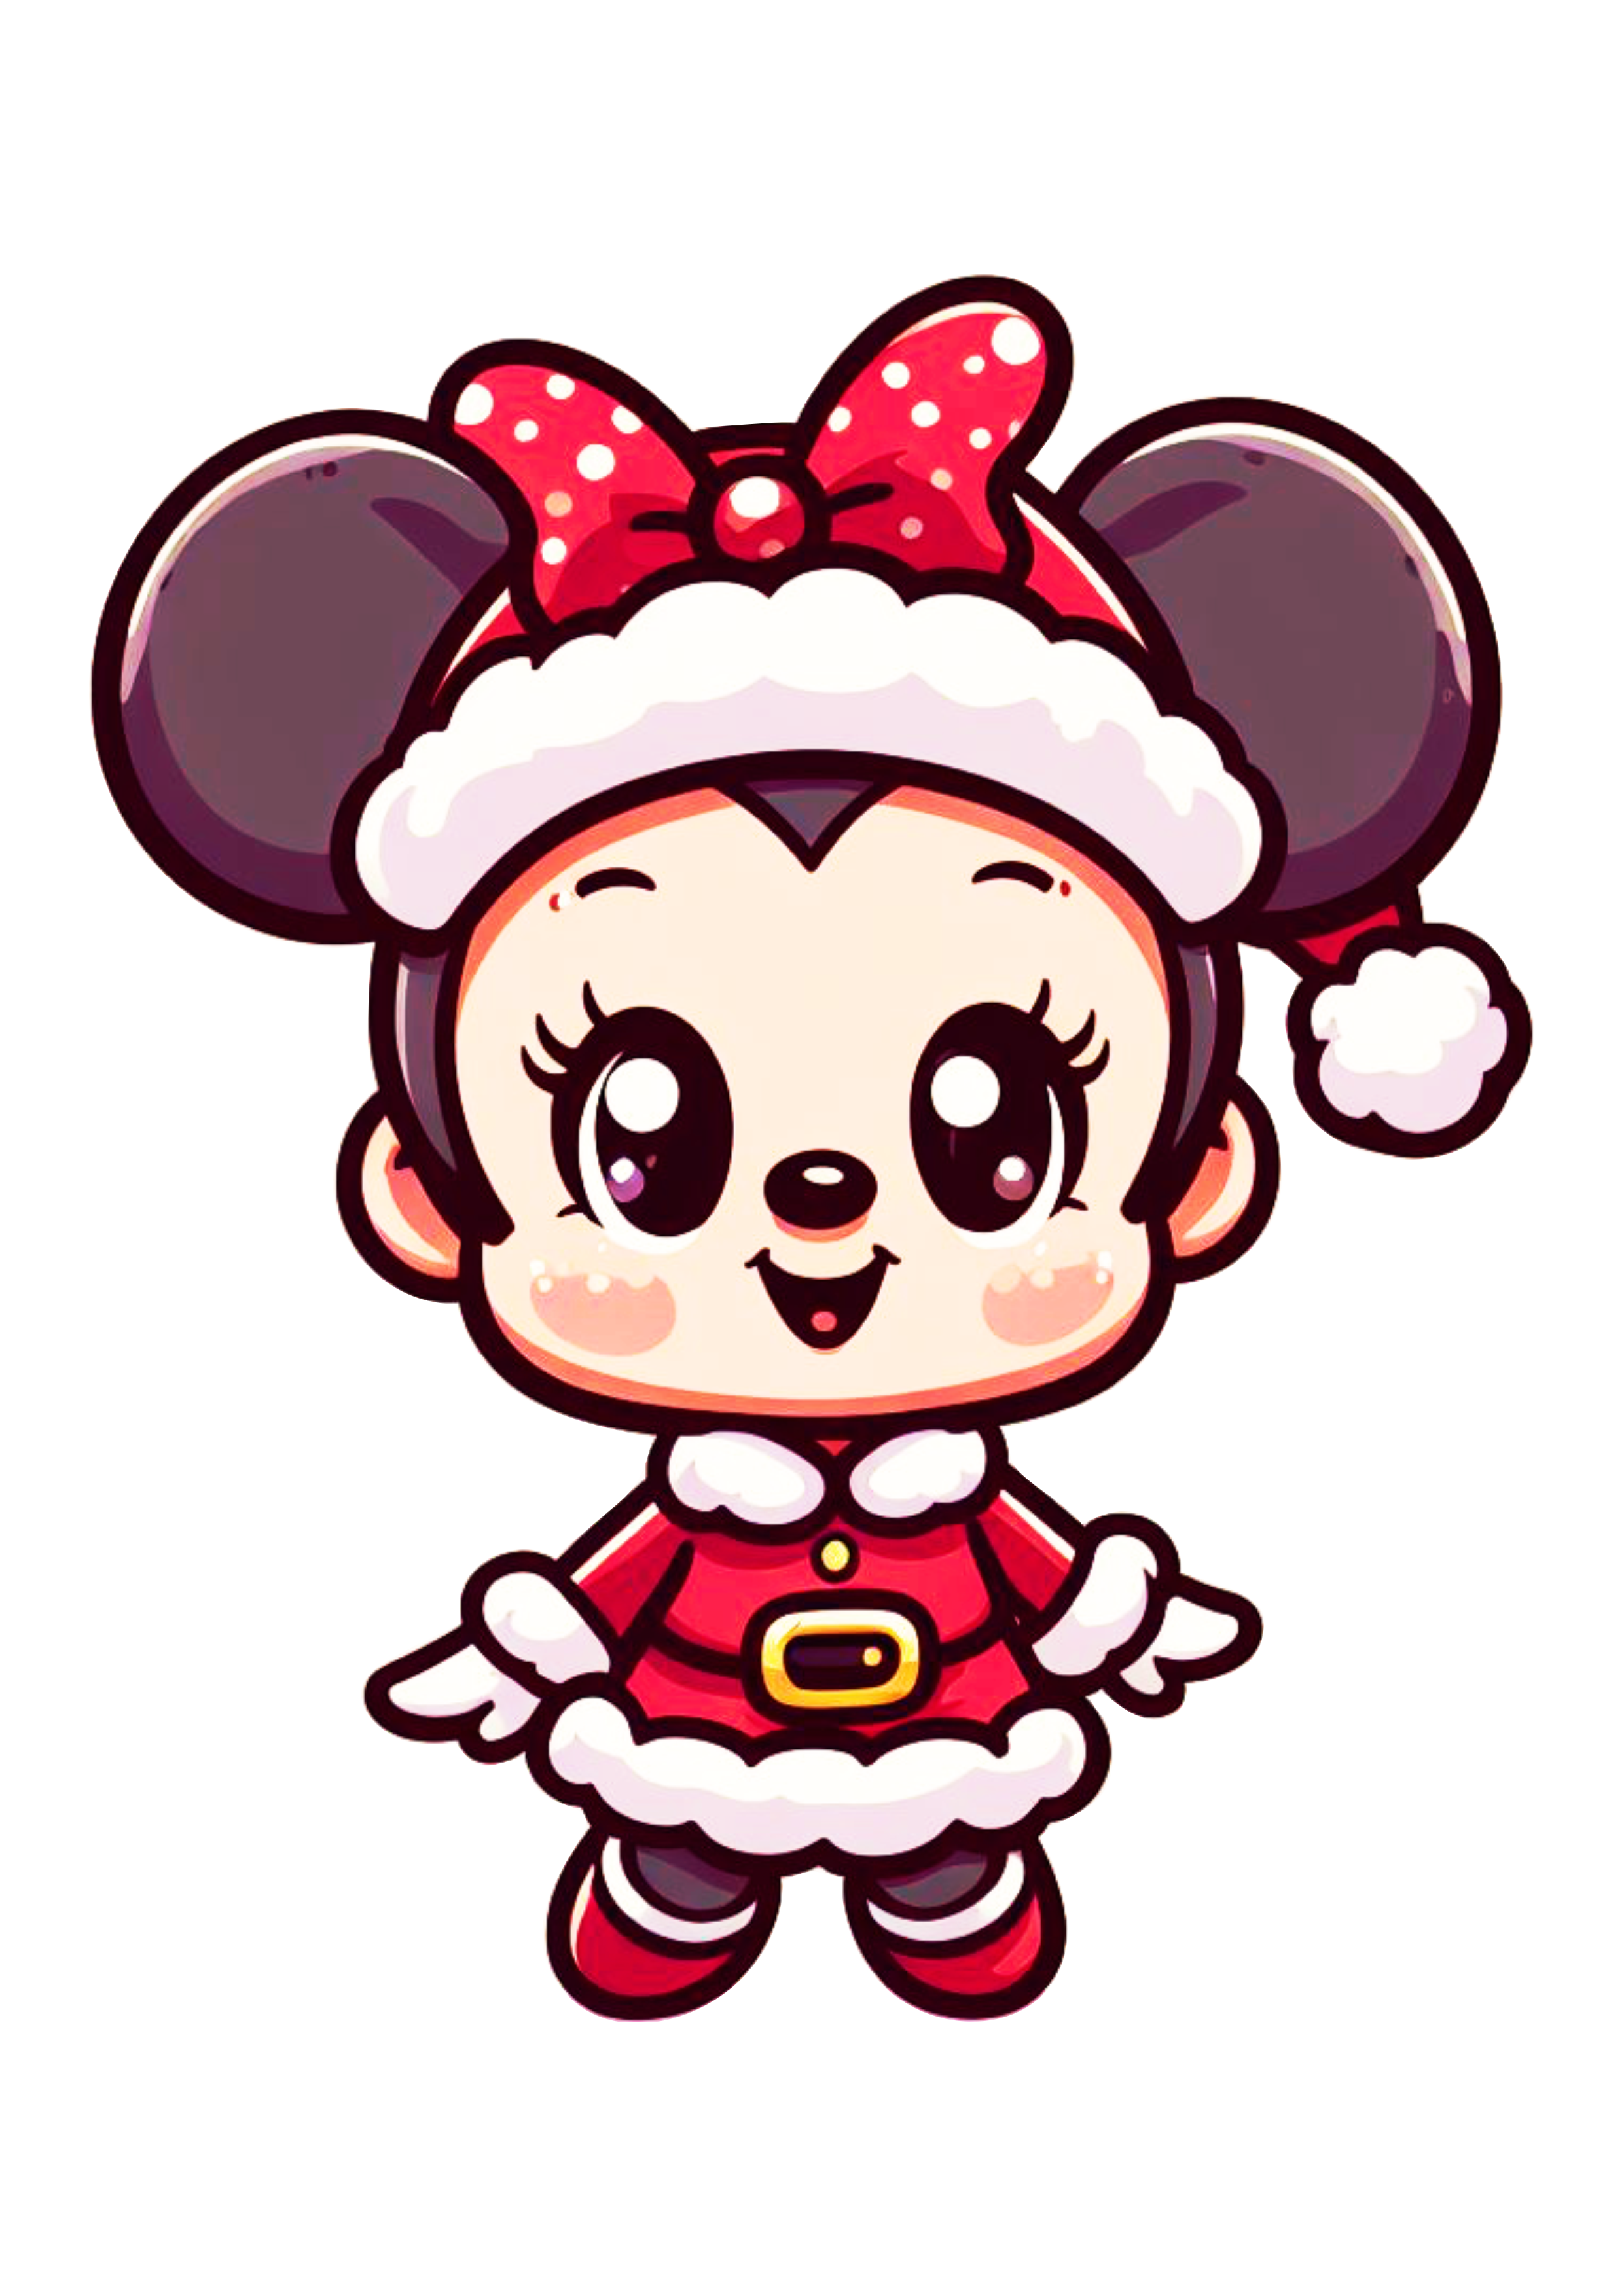 Minnie Mouse baby com roupinha de natal bonequinha fofinha baby desenho simples png